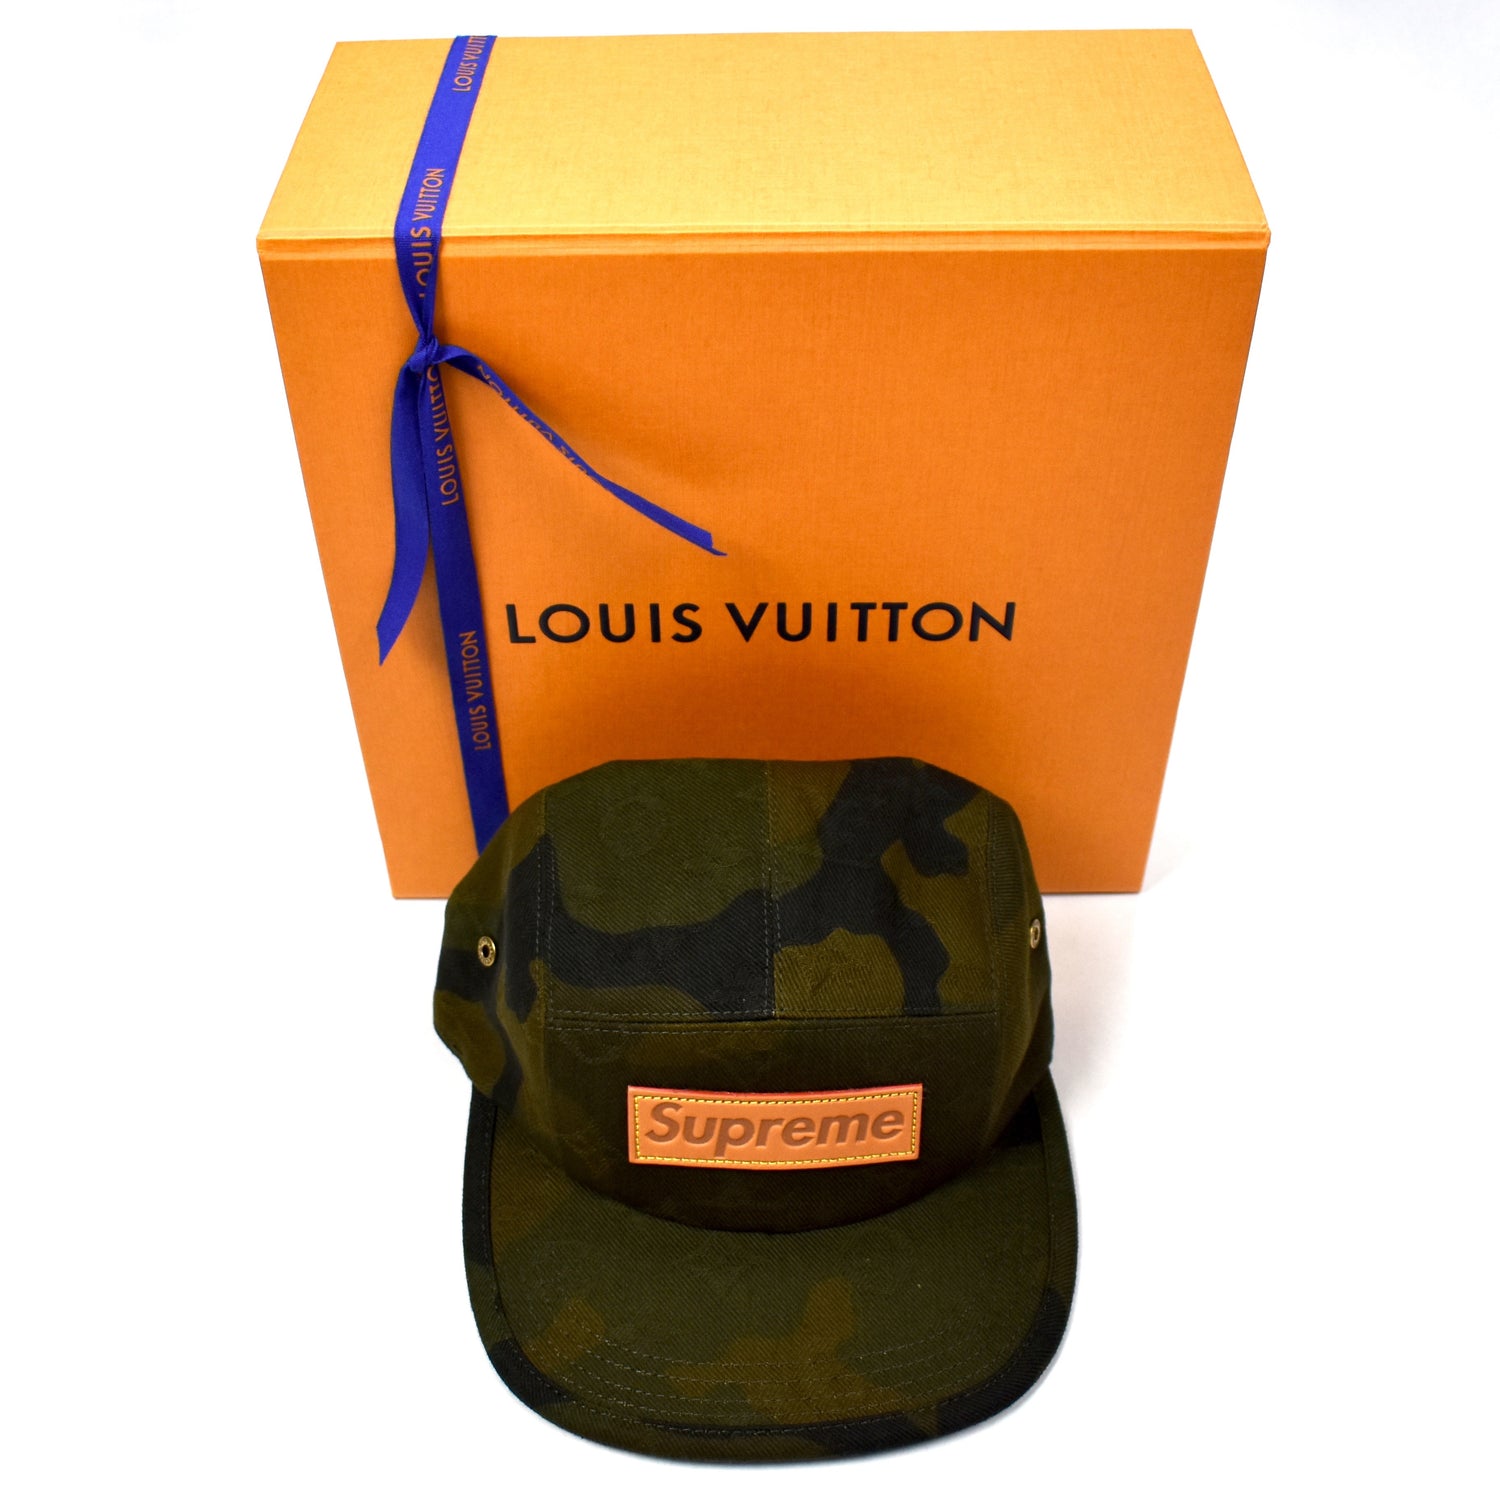 Supreme x Louis Vuitton Camp Cap Camo